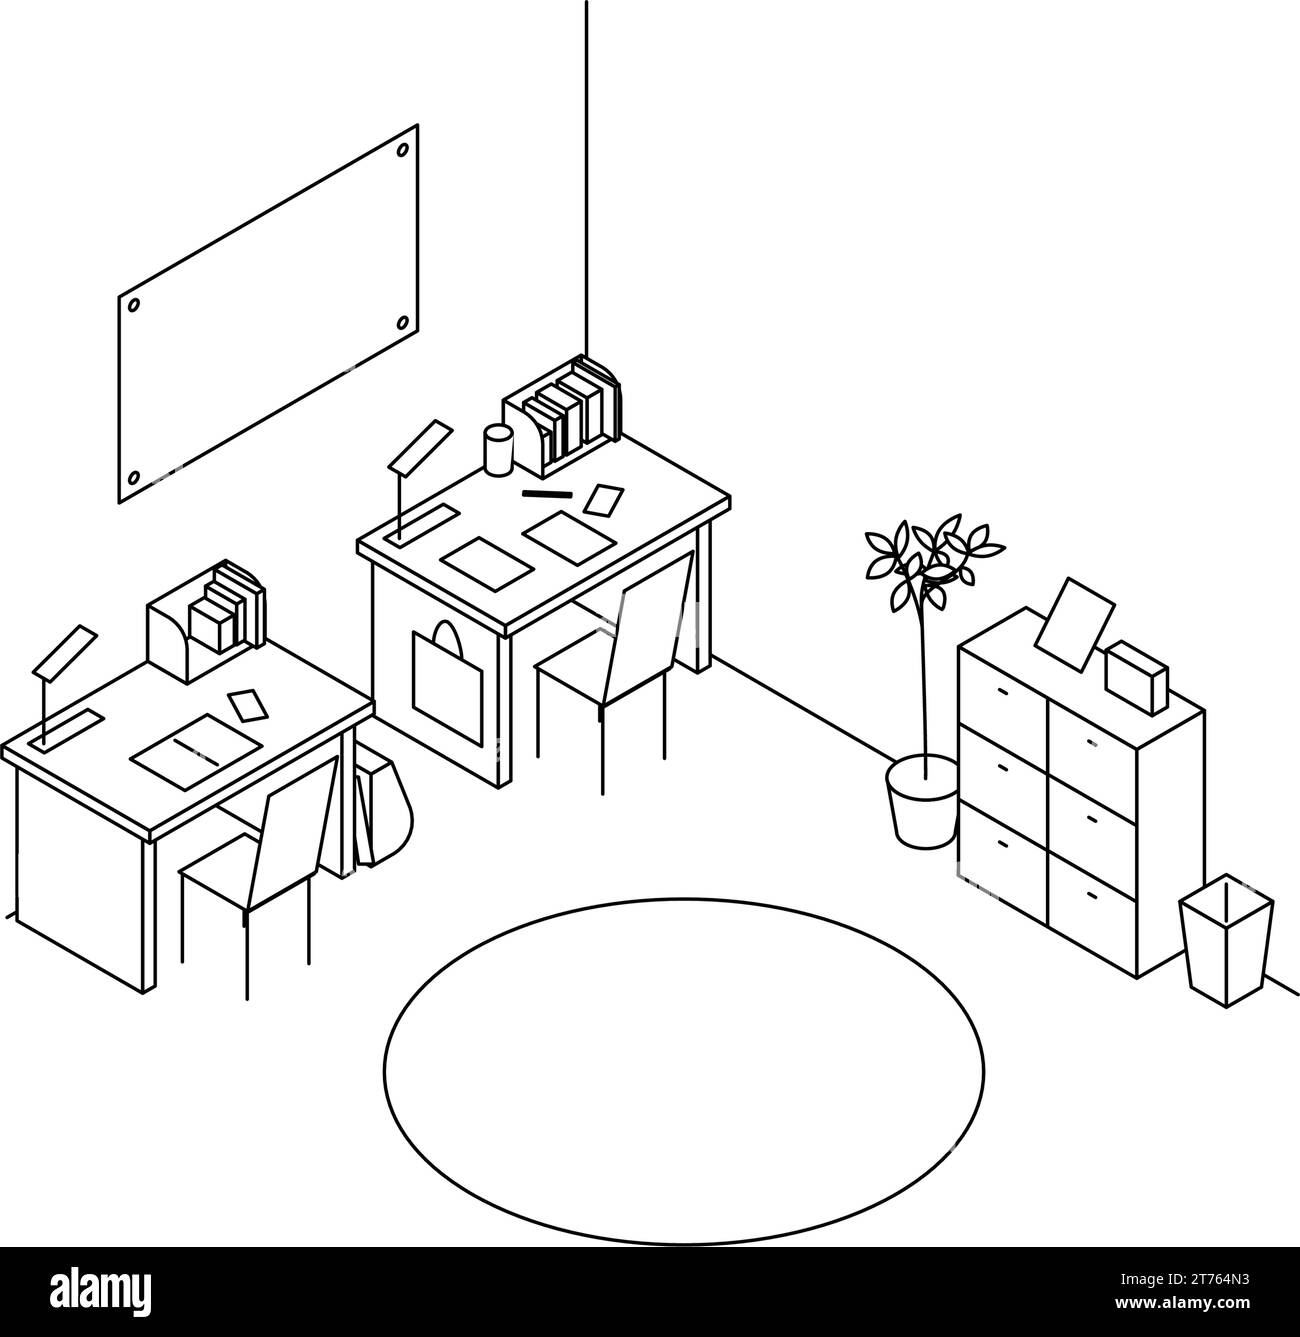 Chambre à louer: Chambre pour enfants, simple isométrique avec deux bureaux côte à côte., illustration vectorielle Illustration de Vecteur